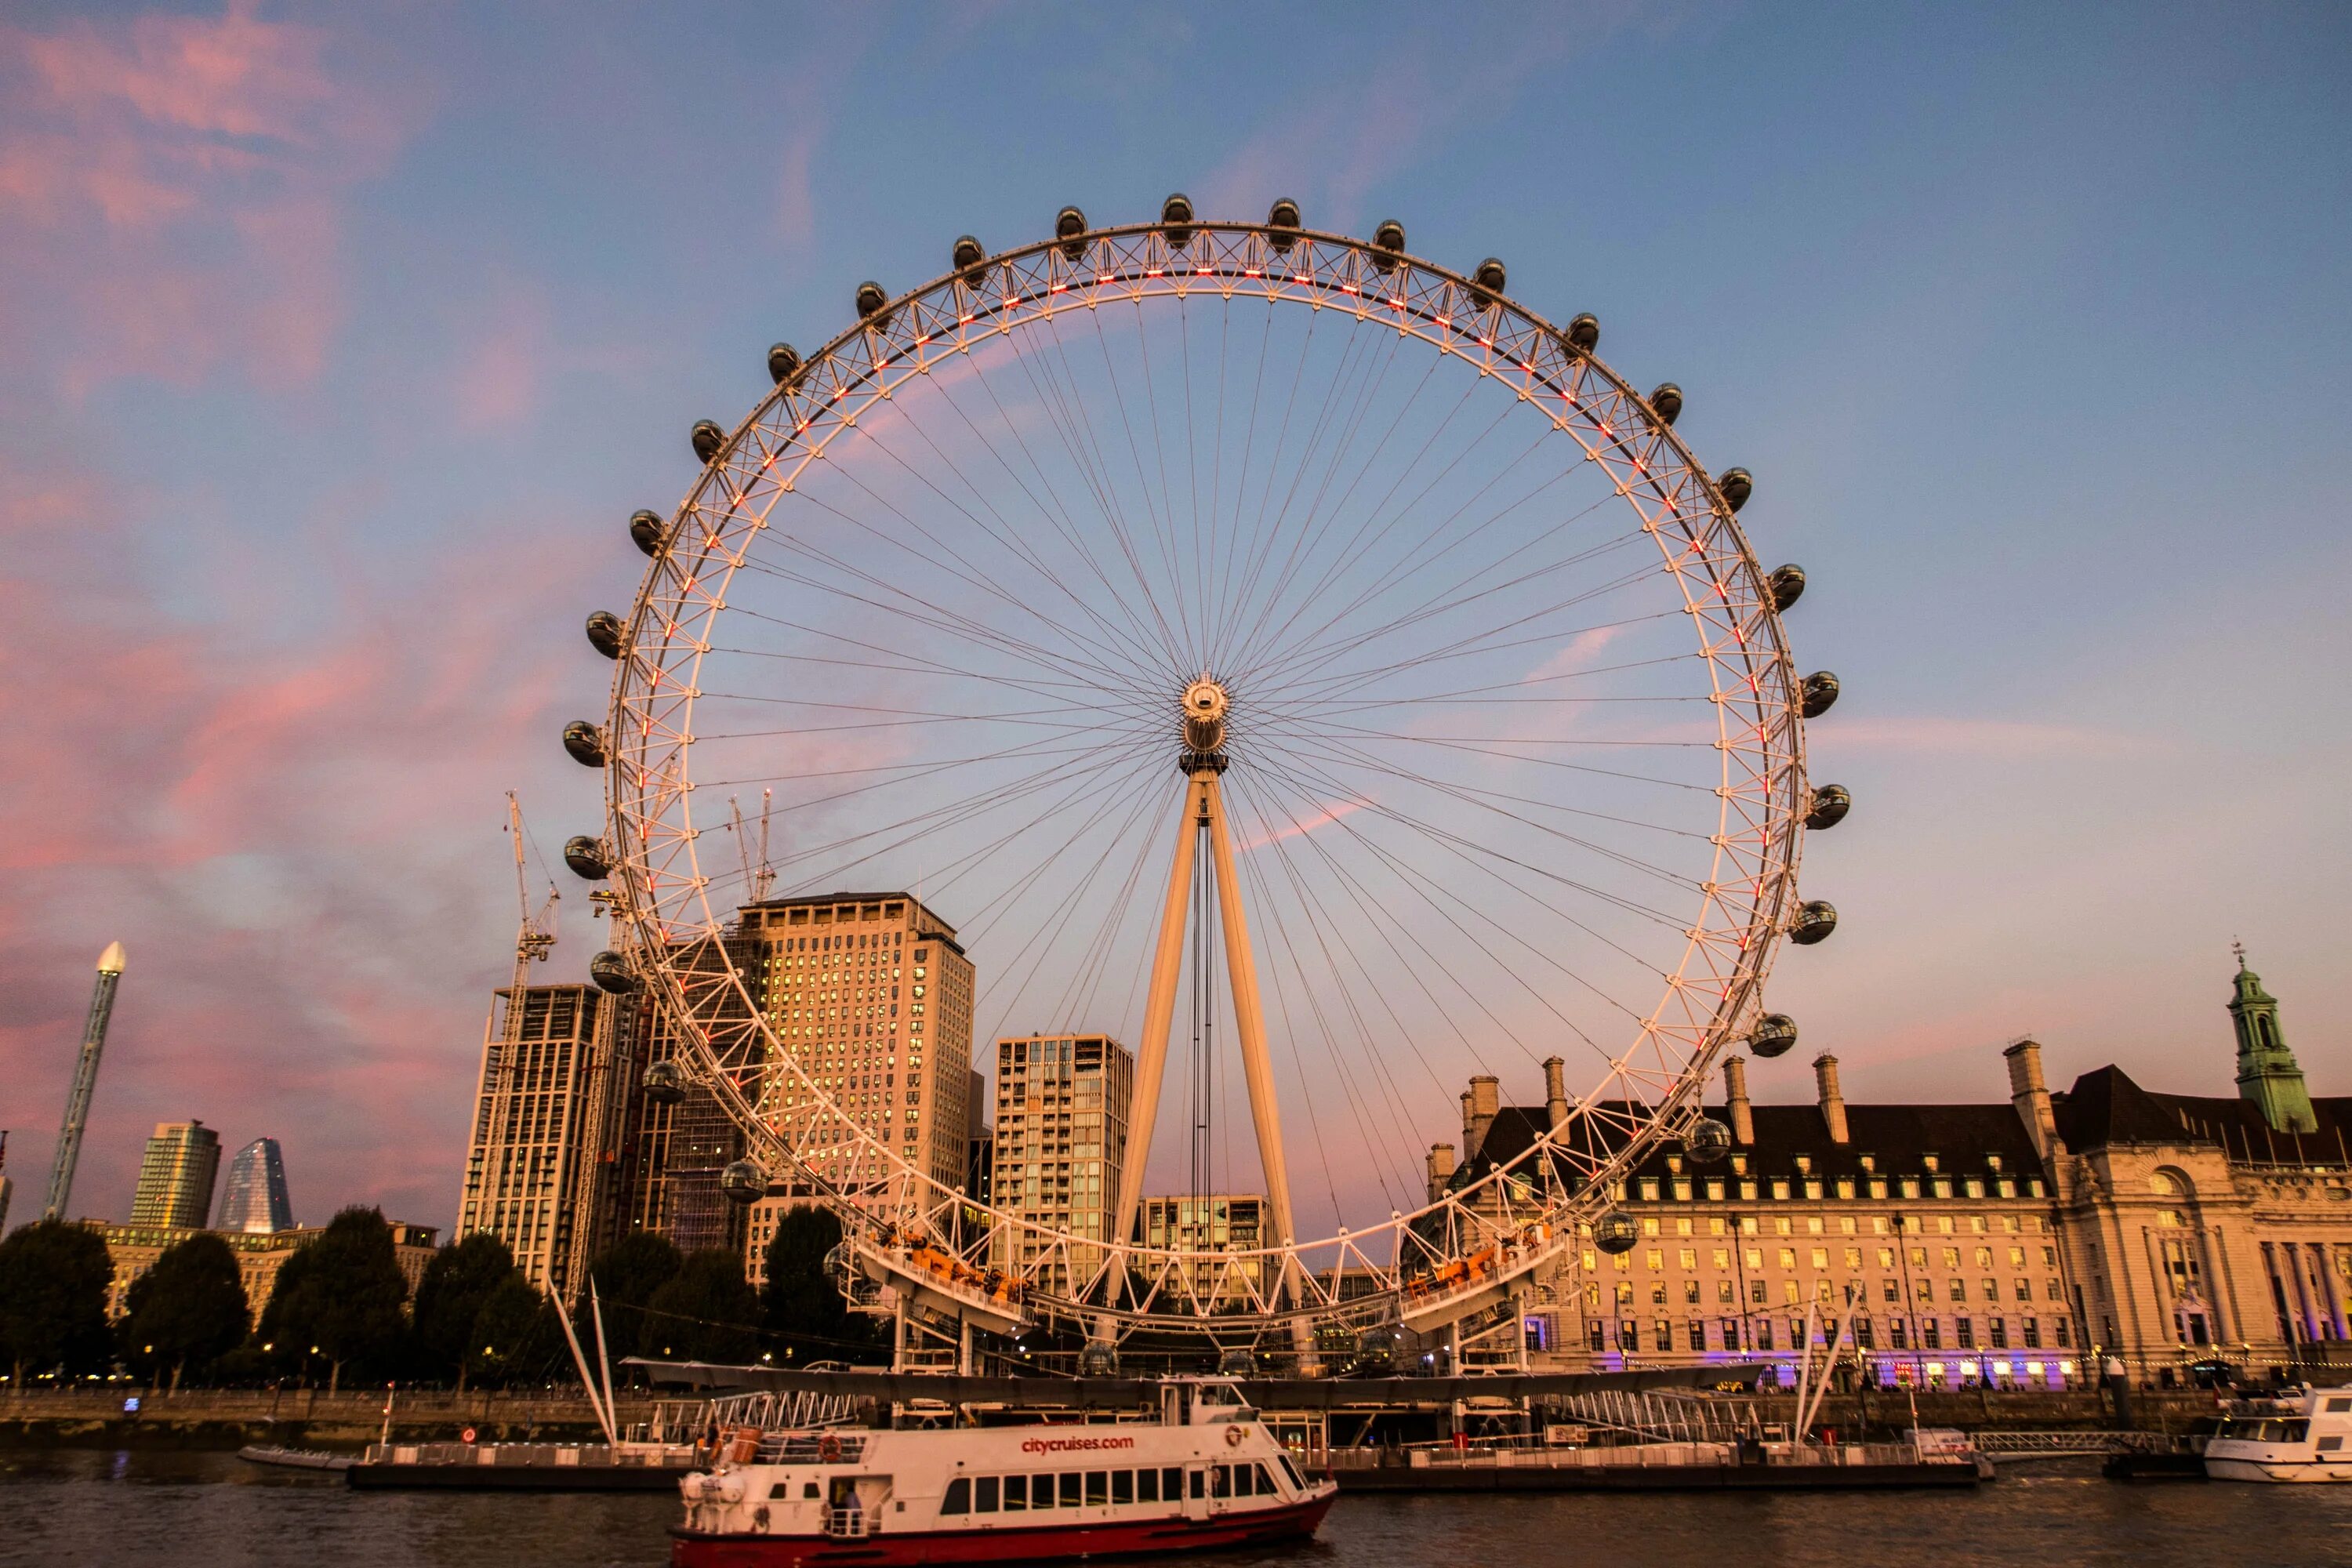 В какой стране находится достопримечательность. Лондонский глаз London Eye. Лондонский глаз и Тауэрский мост. Биг Бен и колесо обозрения в Лондоне. Достопримечательности Лондона «Лондонский глаз» (London Eye).